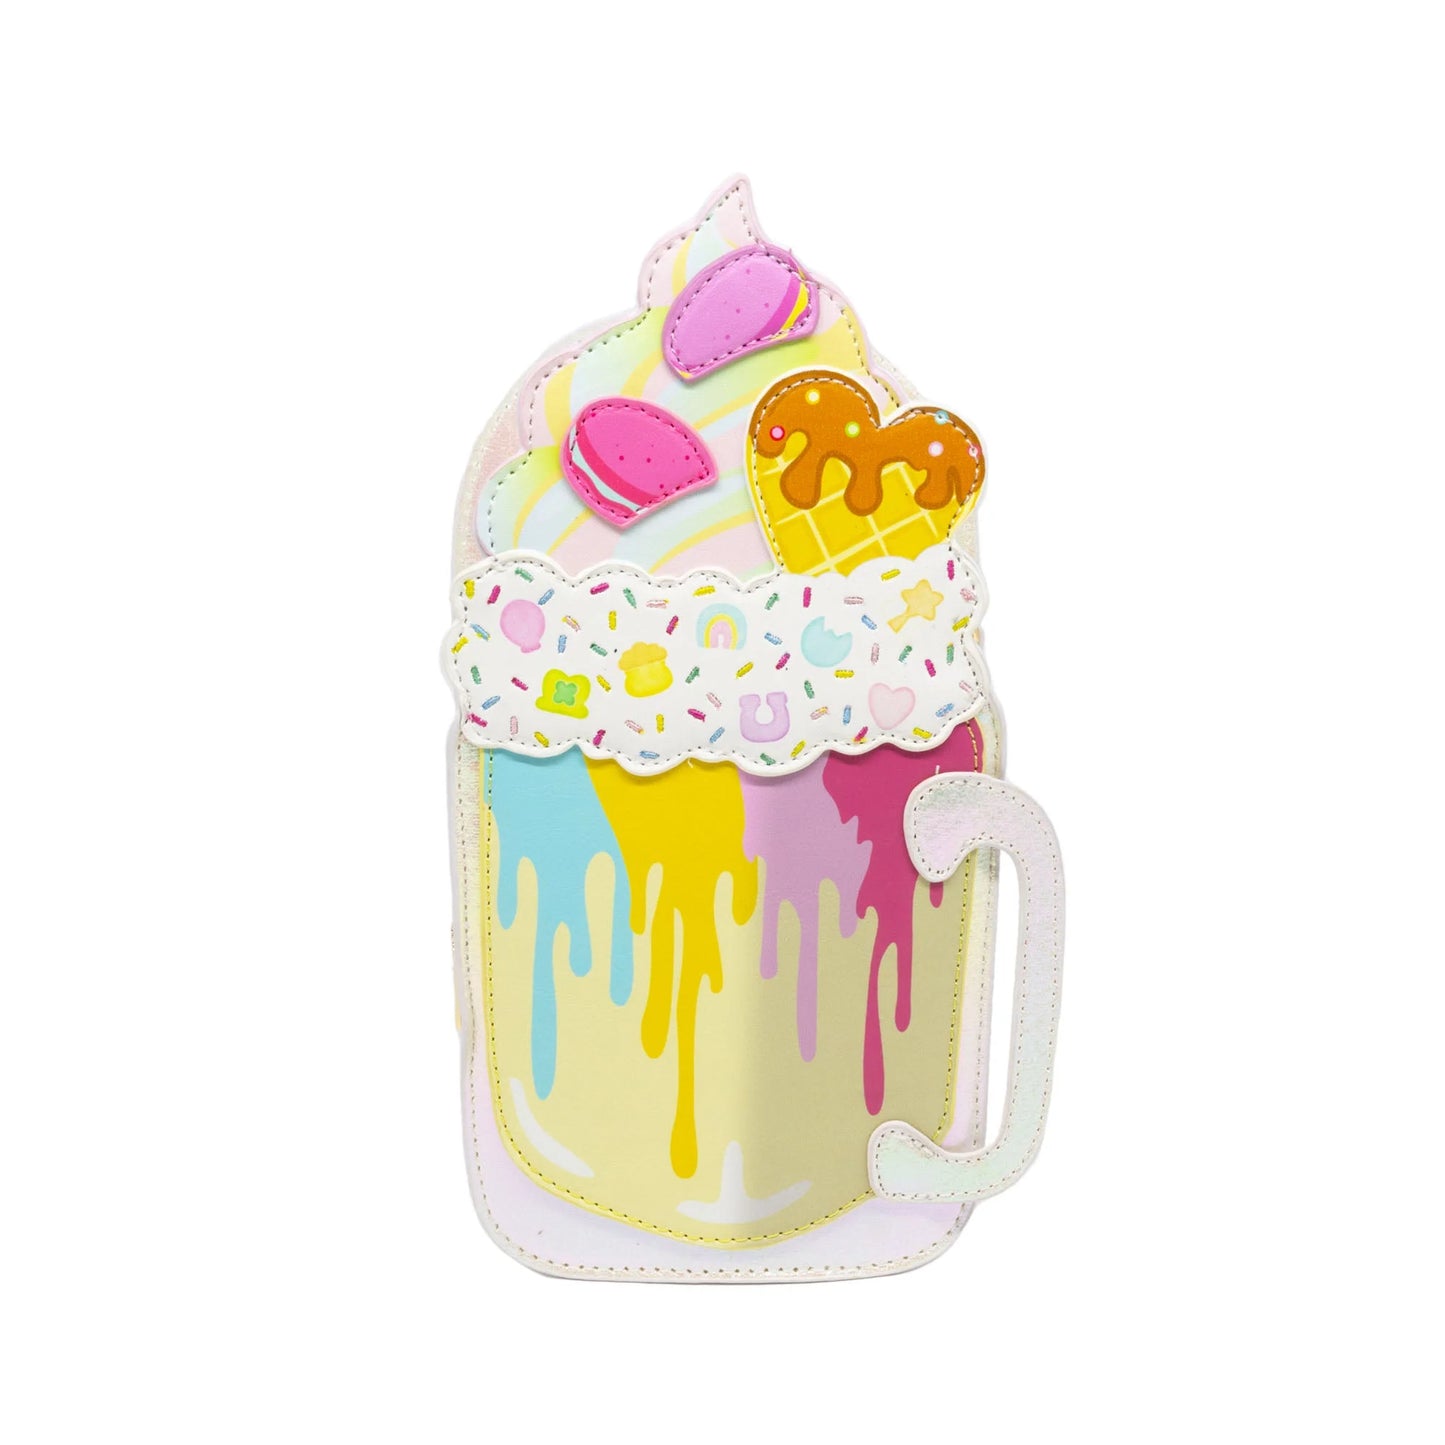 Milkshake Mug Handbag- Rainbow Sprinkles